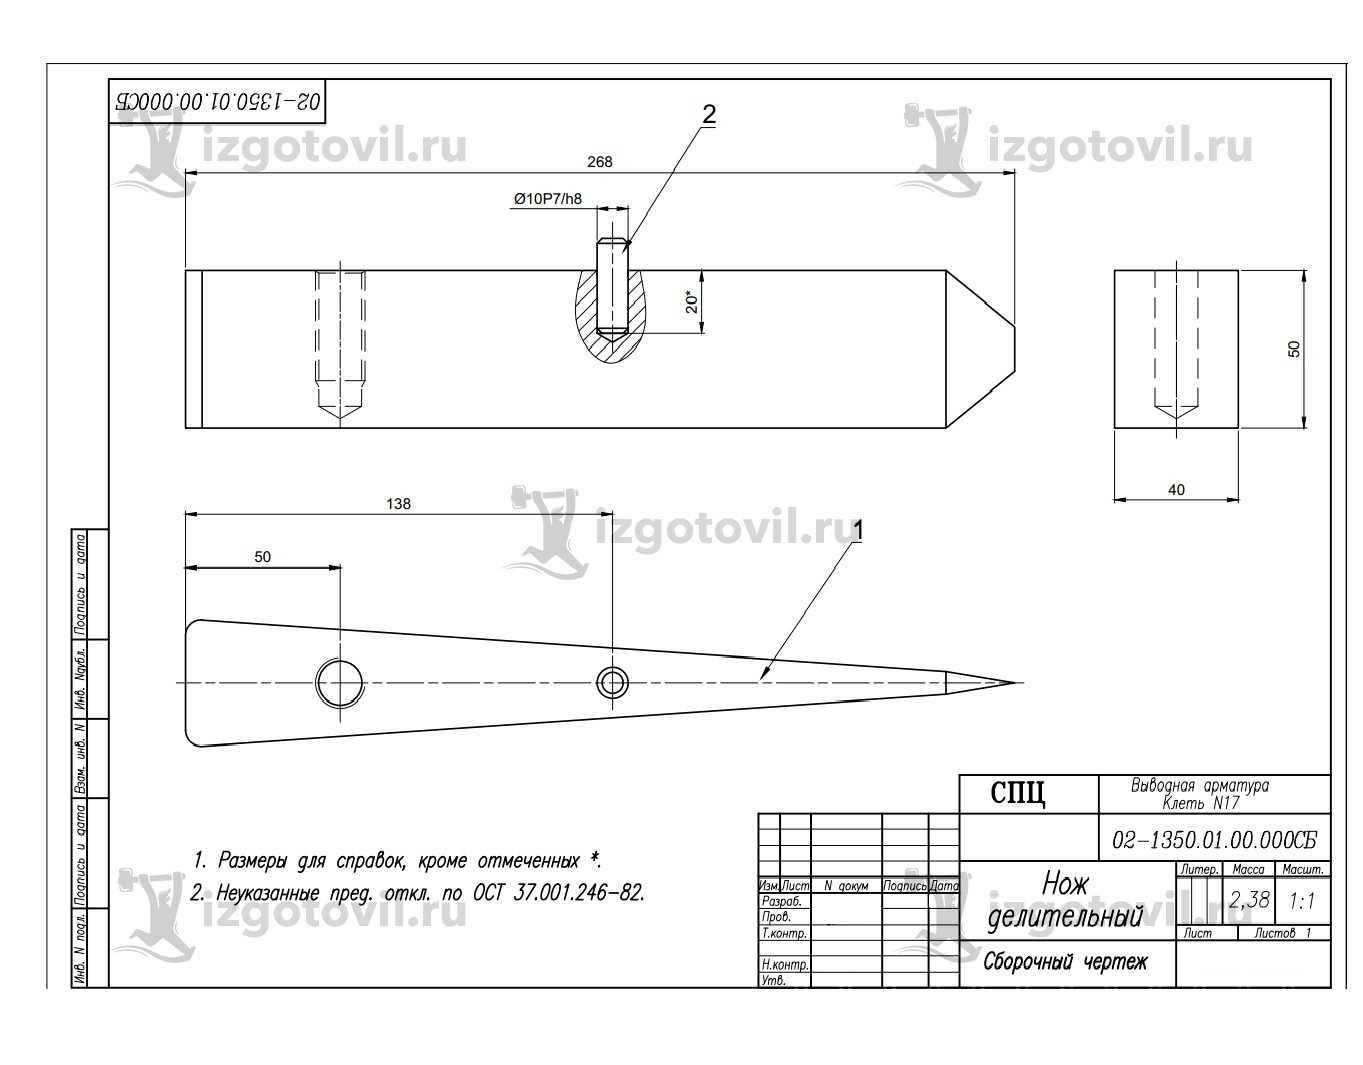 Изготовление деталей по чертежам: изготовление ножей, вала и втулок